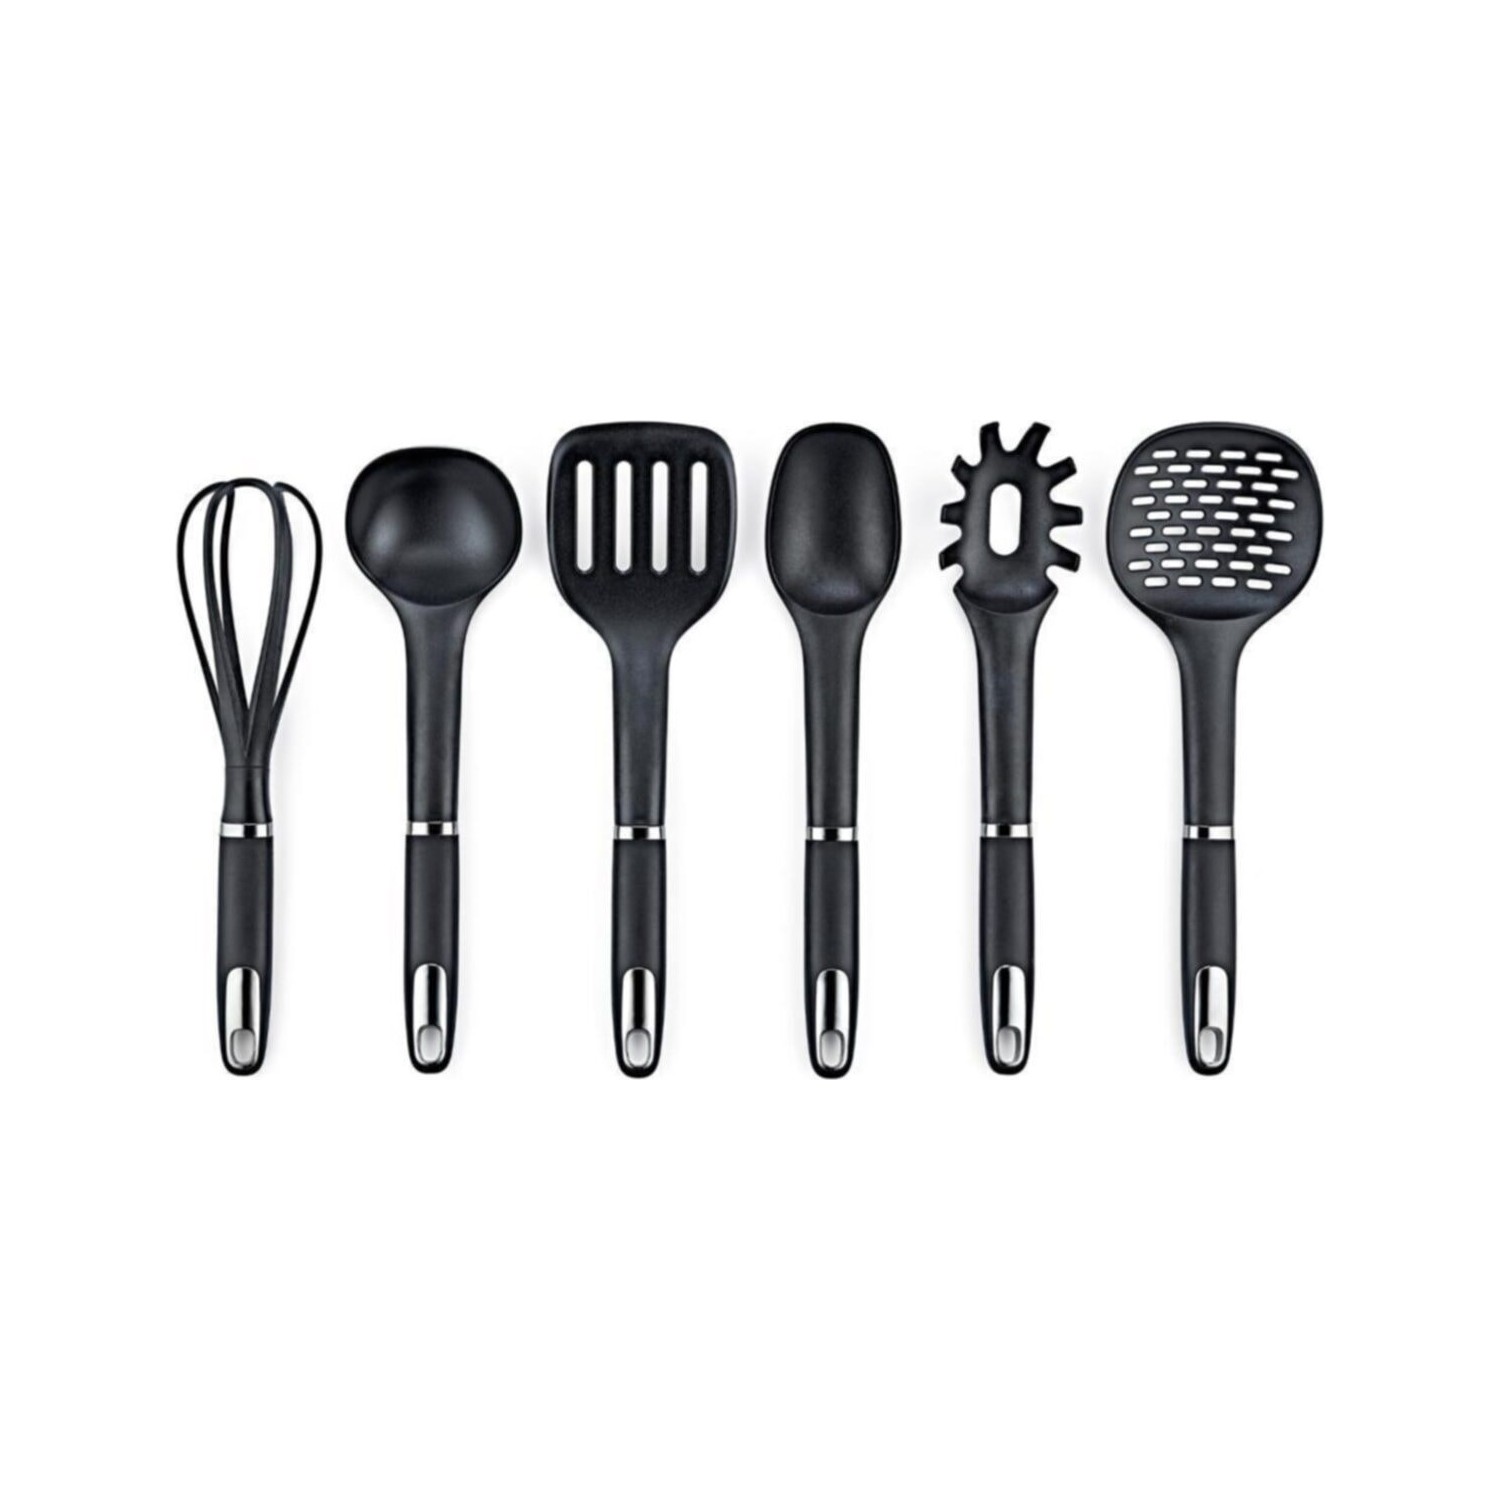 Набор кухонных принадлежностей Vipahmet из 6 предметов, черный набор кухонных принадлежностей vipahmet серебро